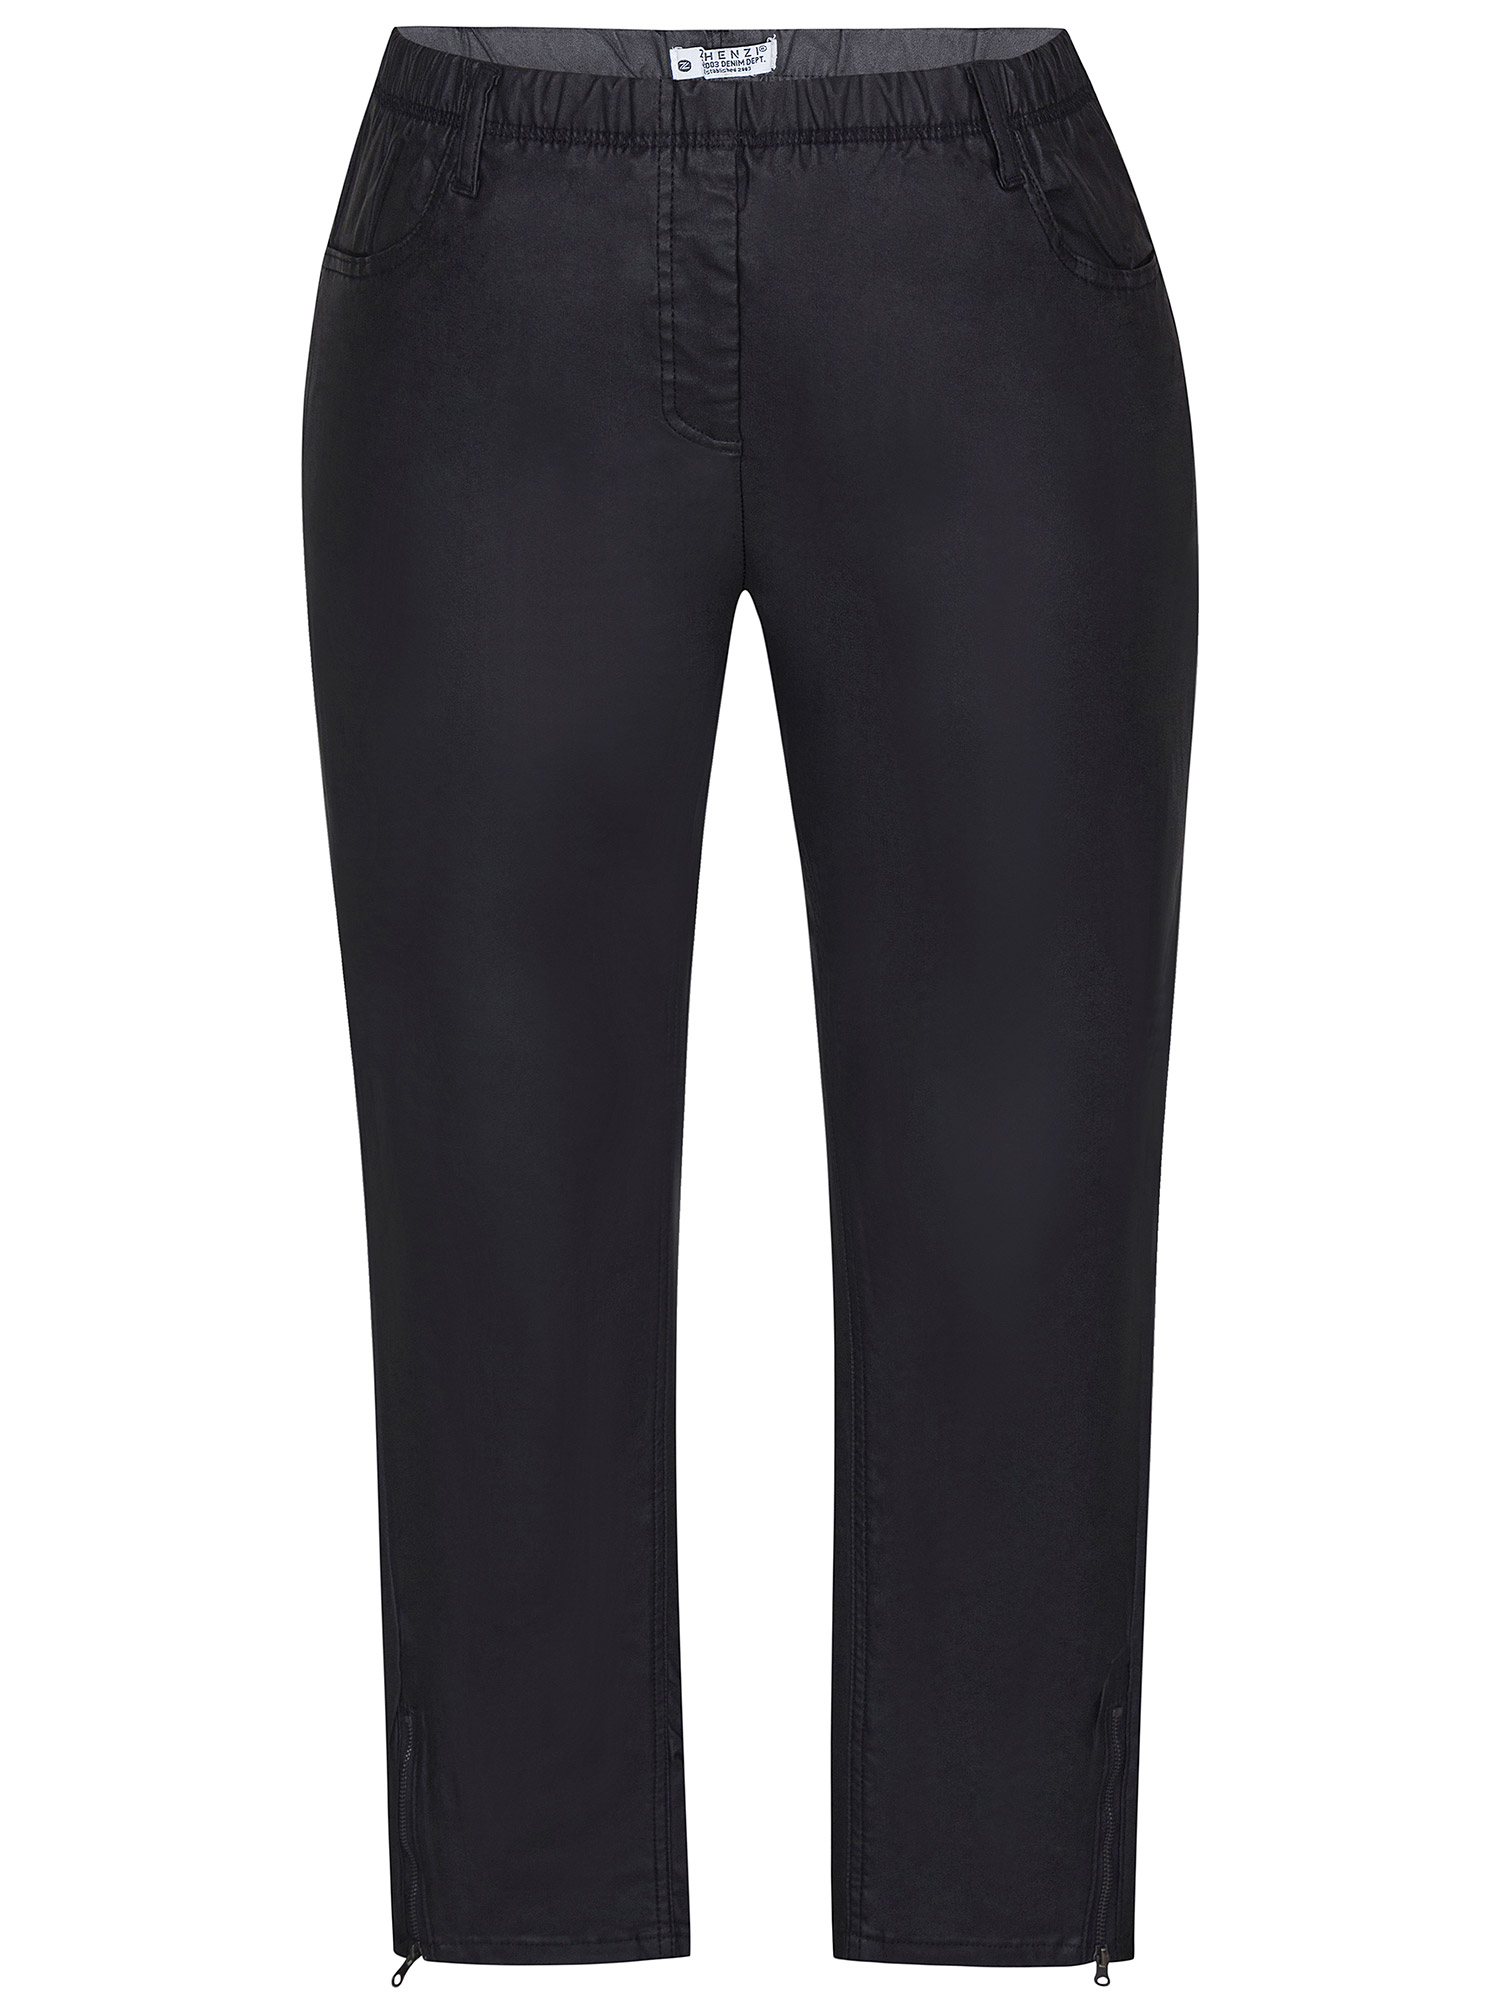 TWIST - Svarte leggings med lommer i skinnlook  fra Zhenzi